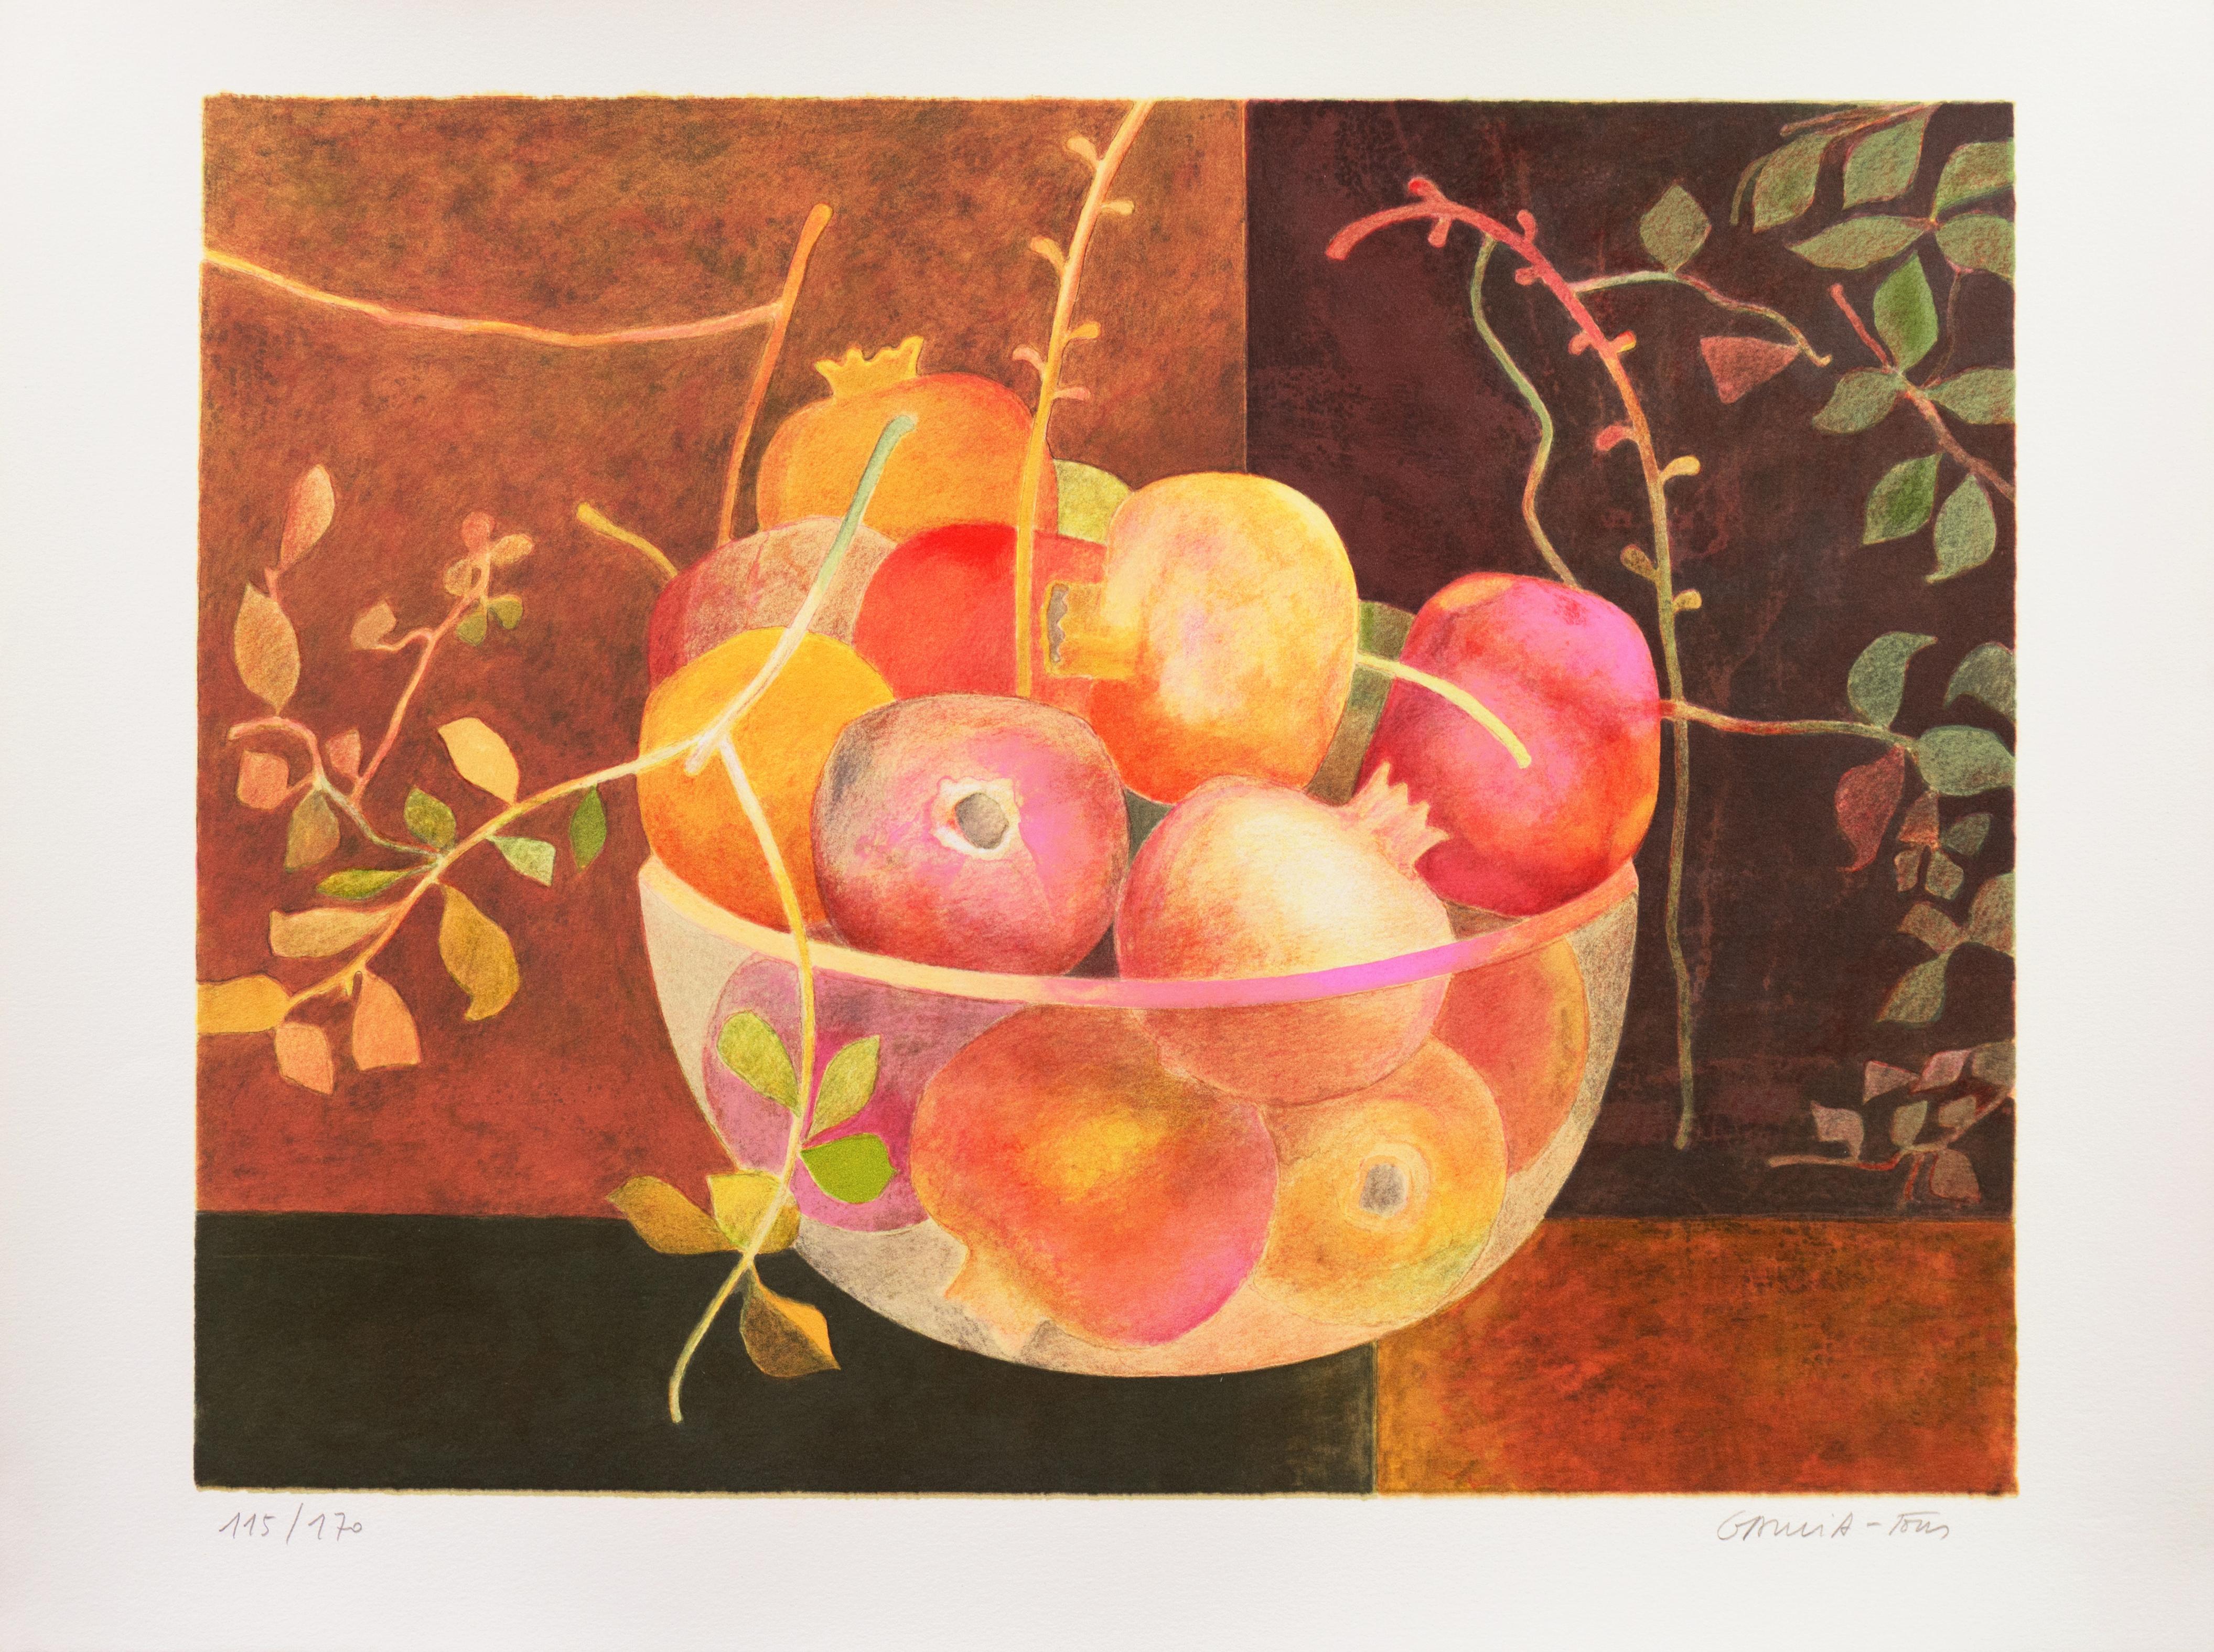 'A Bowl of Pomegranates', Academie Chaumiere, Paris, Ecole des Beaux-Arts, MoMA - Print by Pierre Garcia Fons